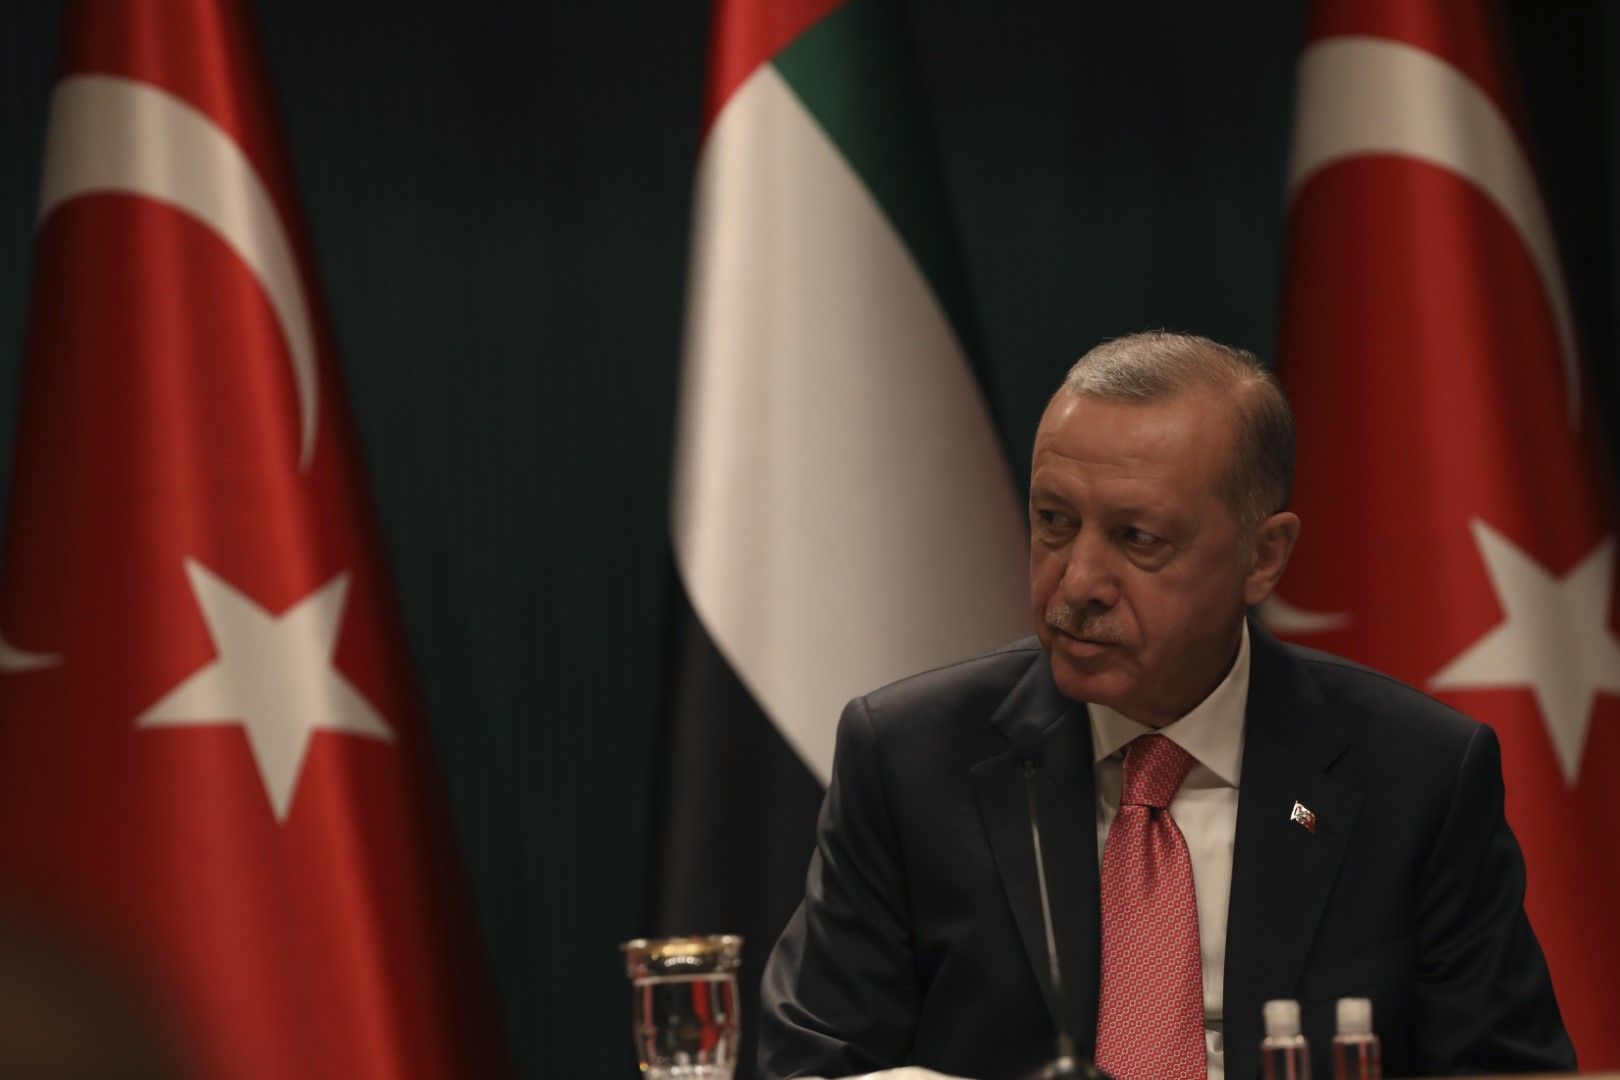  Ердоган е възприел неконвенционалното становище, че високите лихви причиняват инфлация